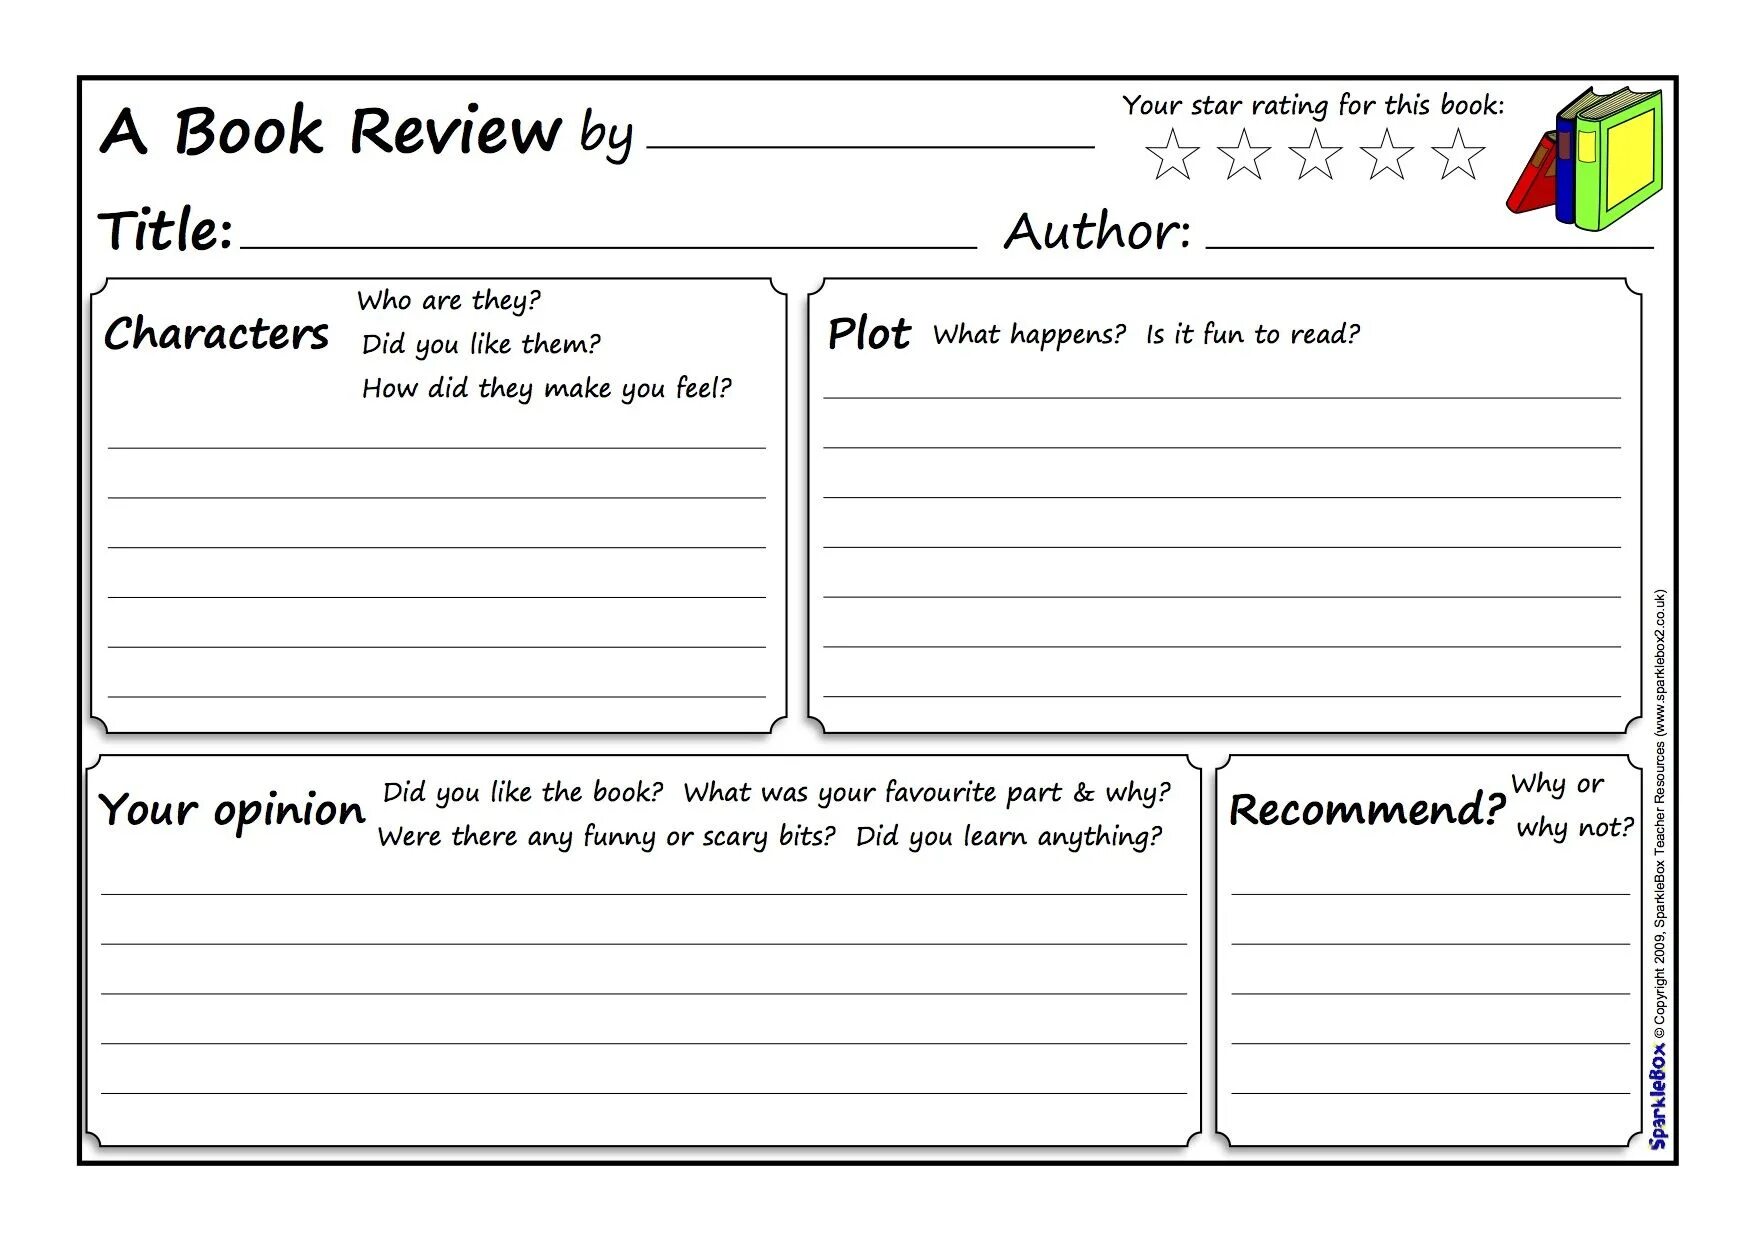 Book Review. Book Review план. Book Review шаблон. Review шаблон. Character questions